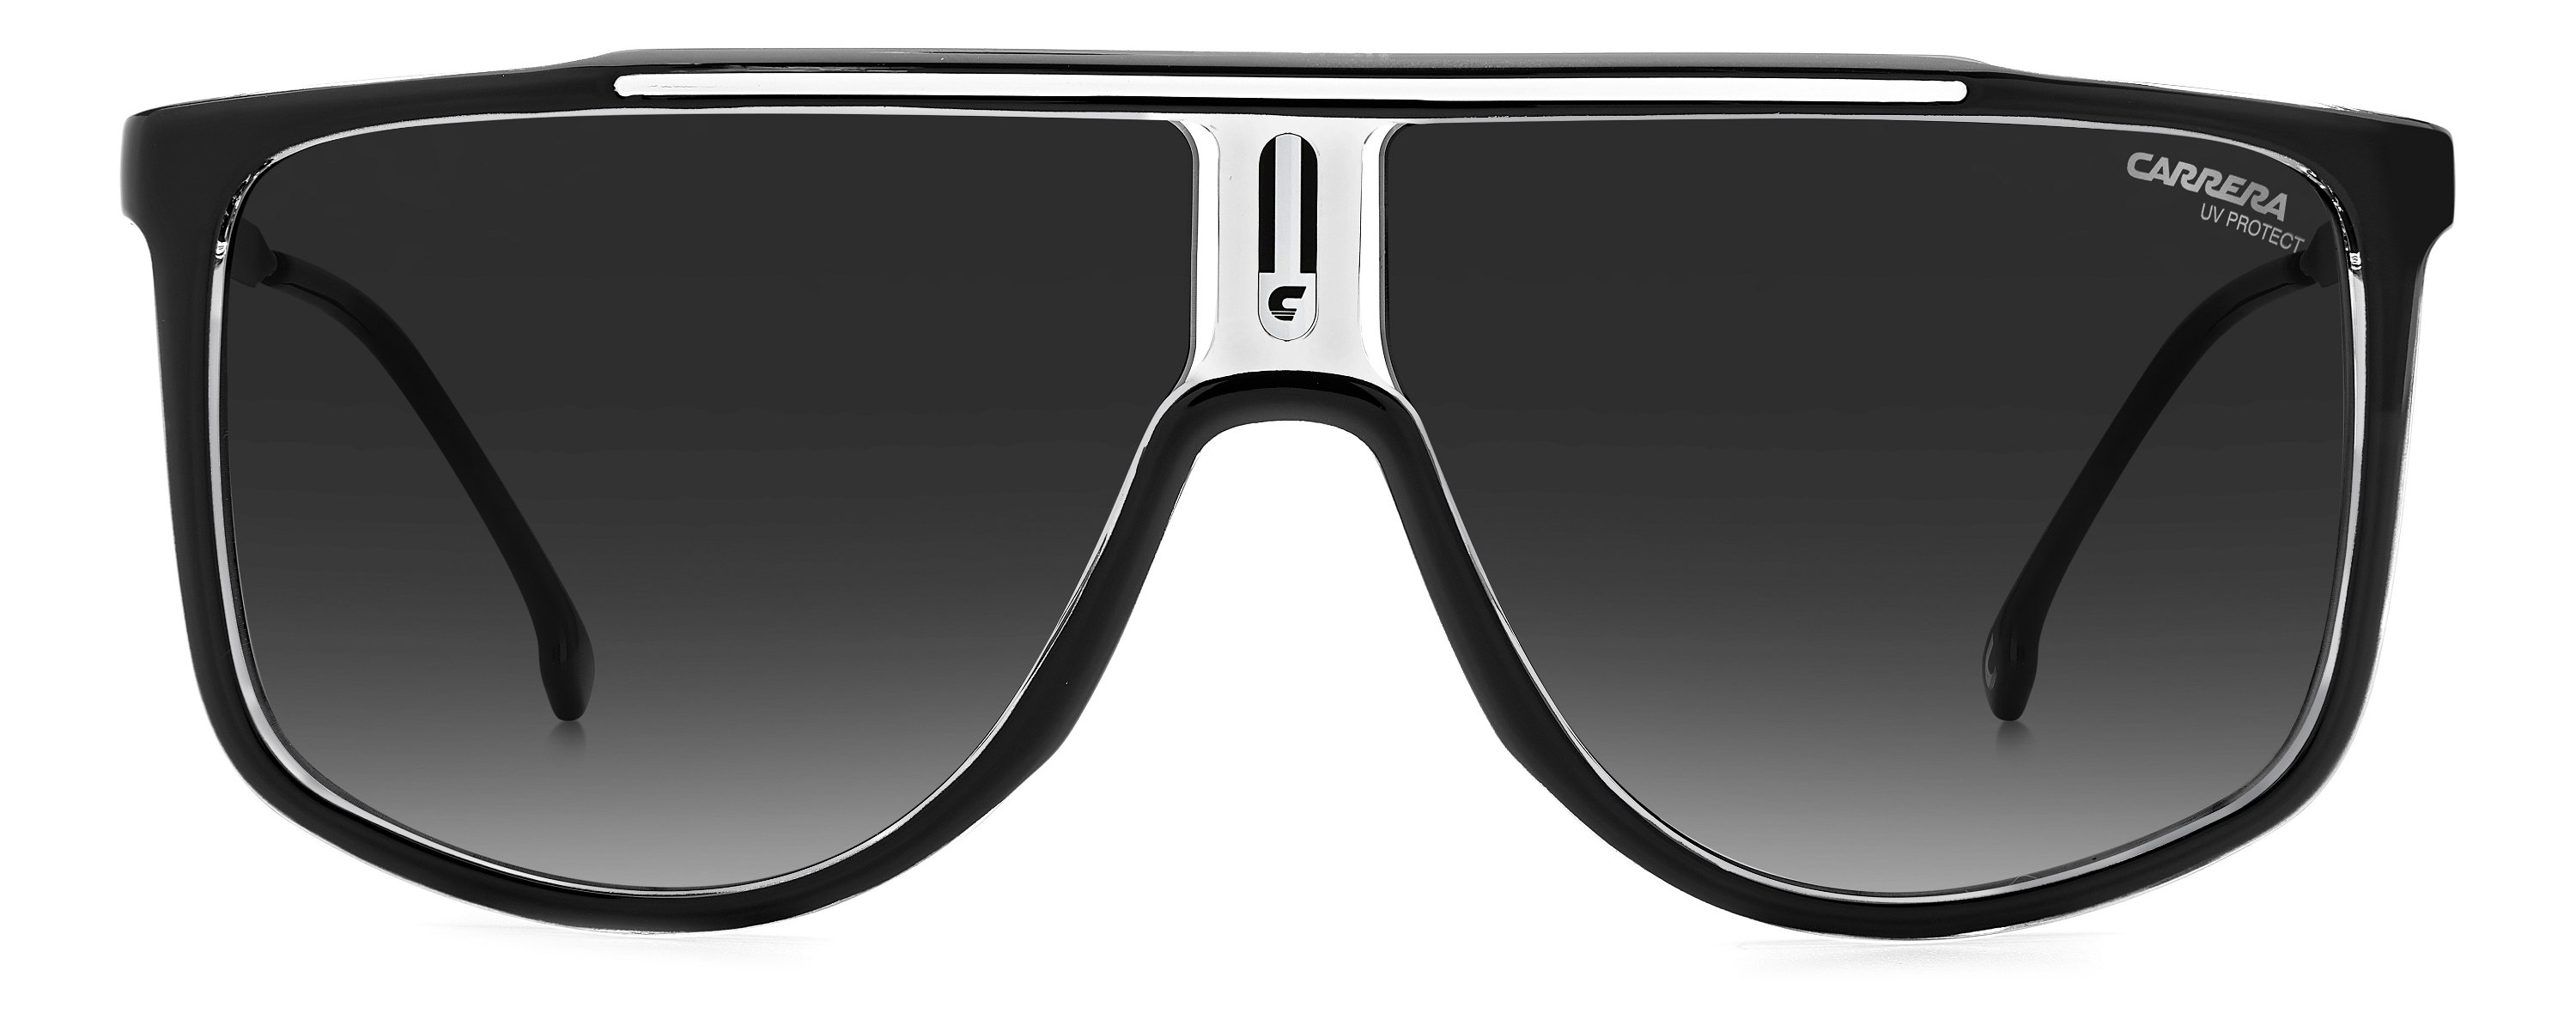 Carrera Sonnenbrille 1056/S 80S schwarz weiß